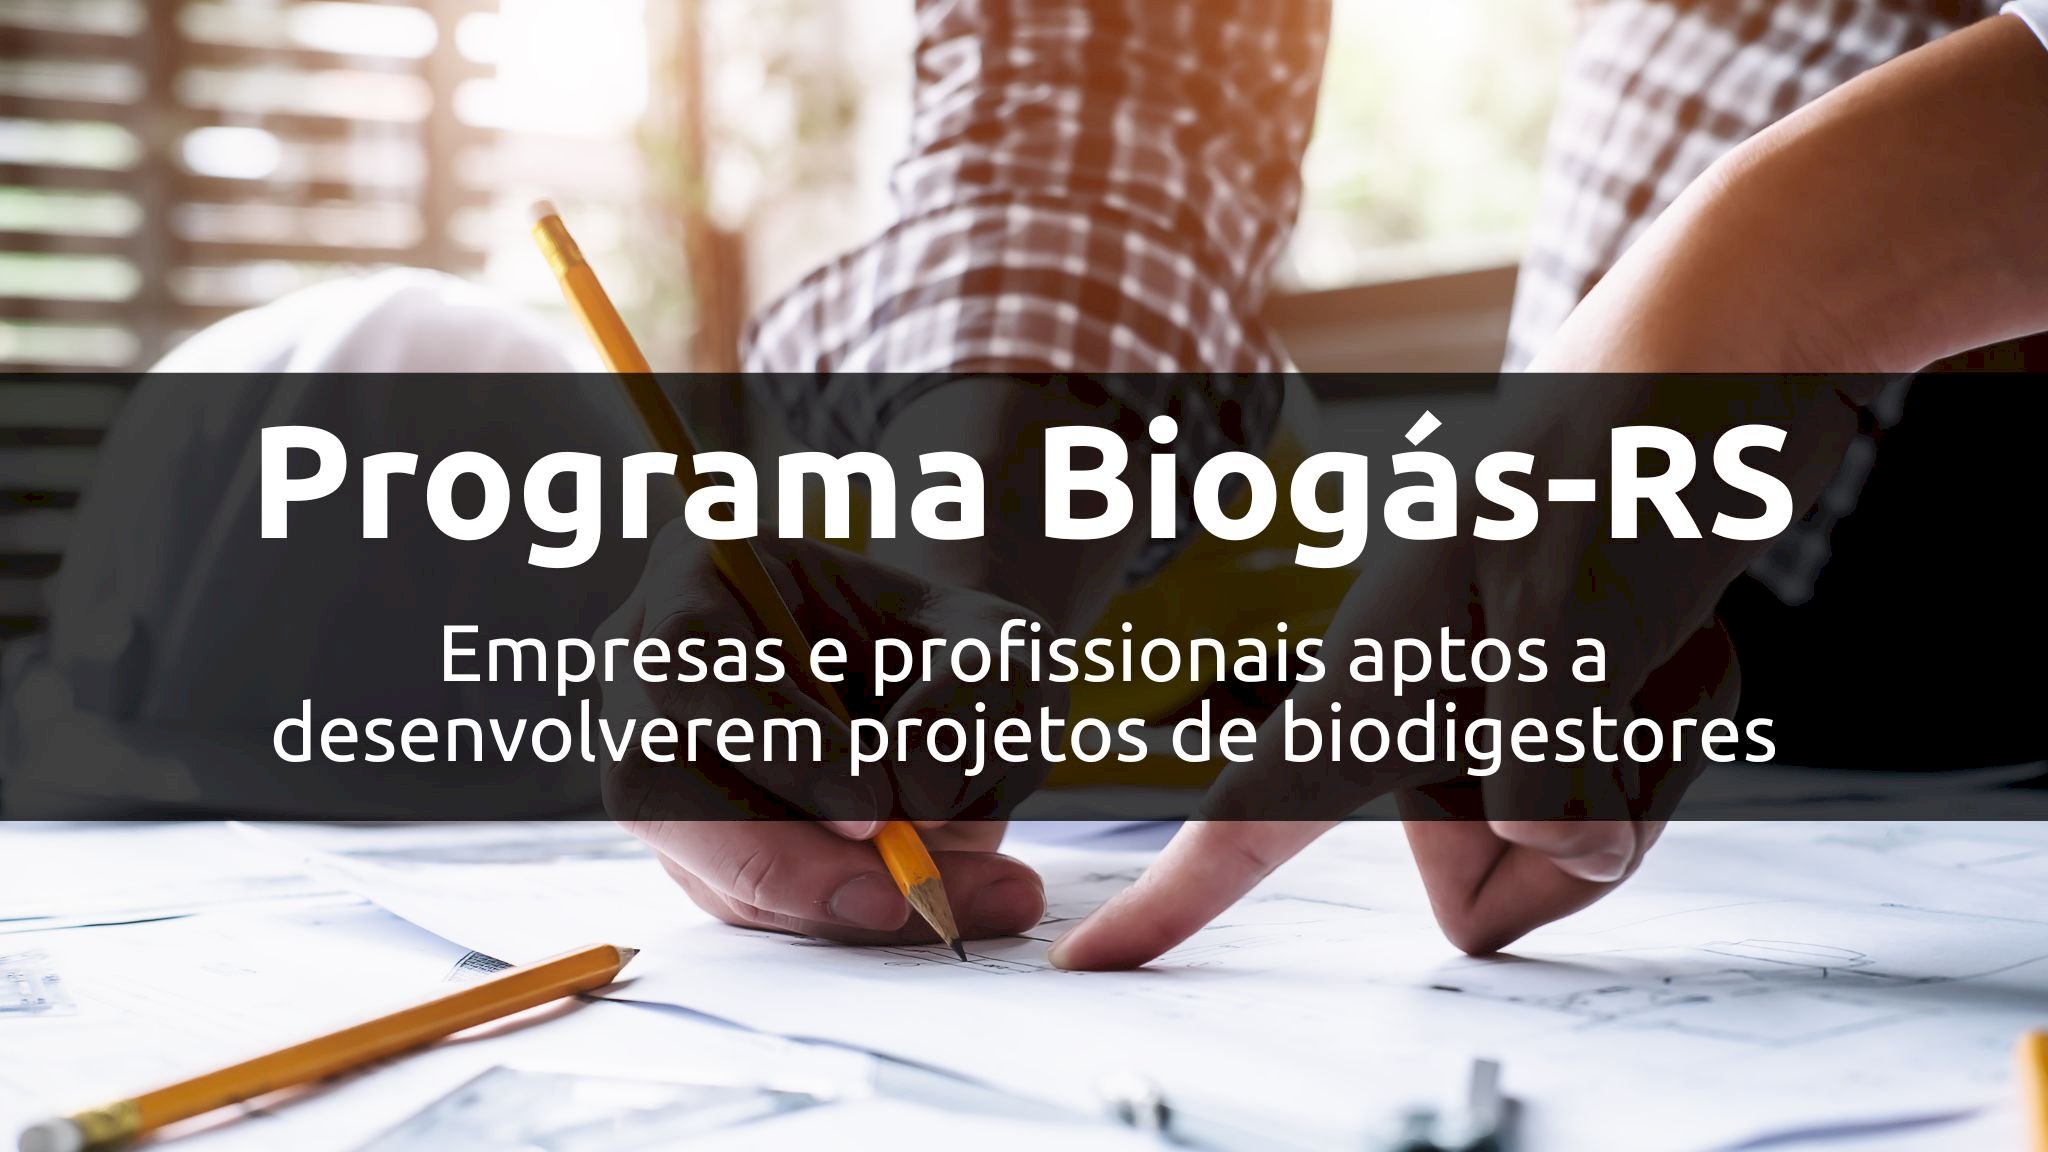 No Rio Grande do Sul, empresas e profissionais aptos para o Programa Biogás-RS